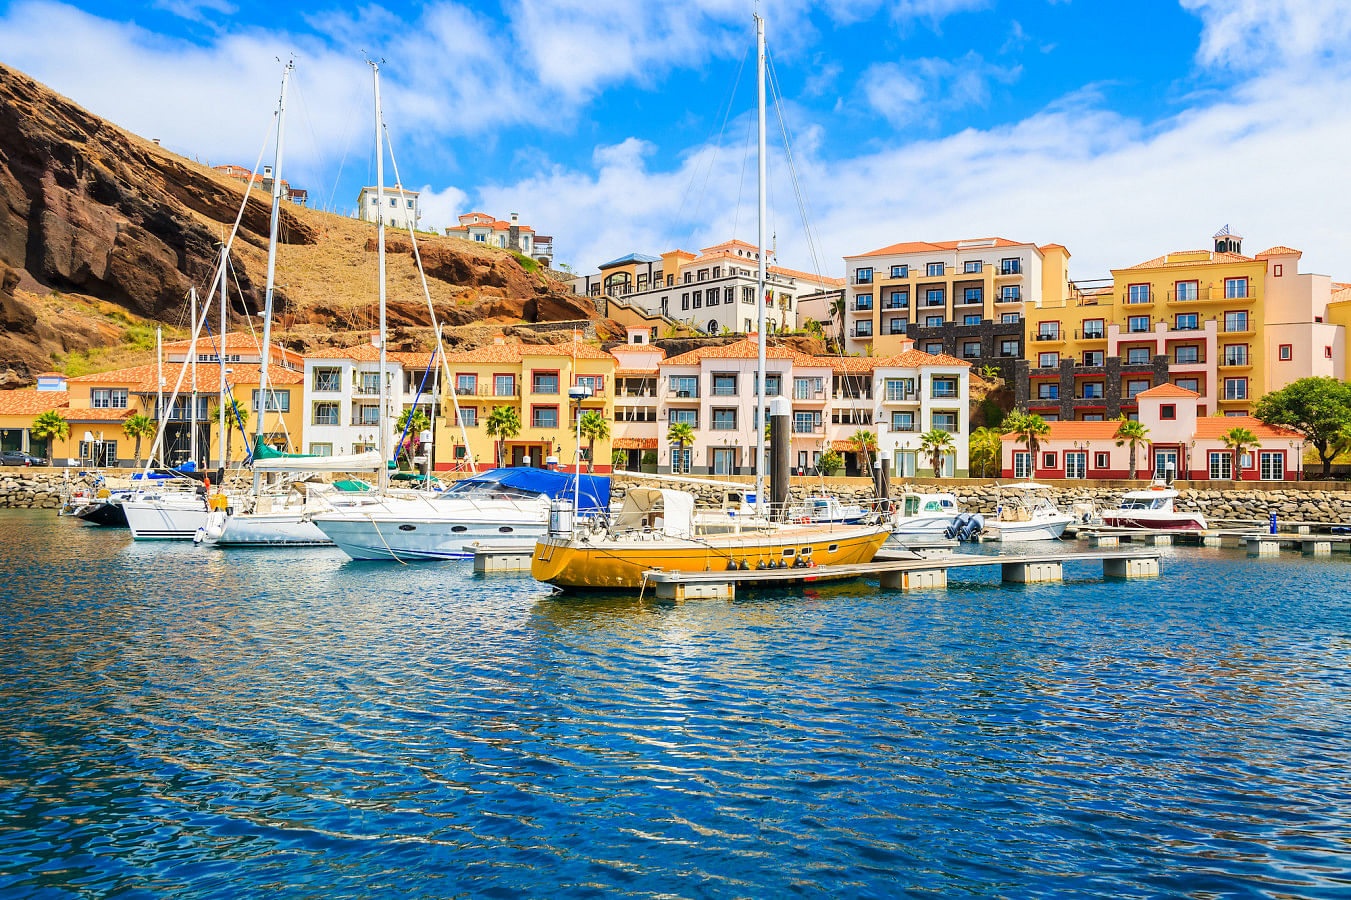 Alquilar un barco en Funchal